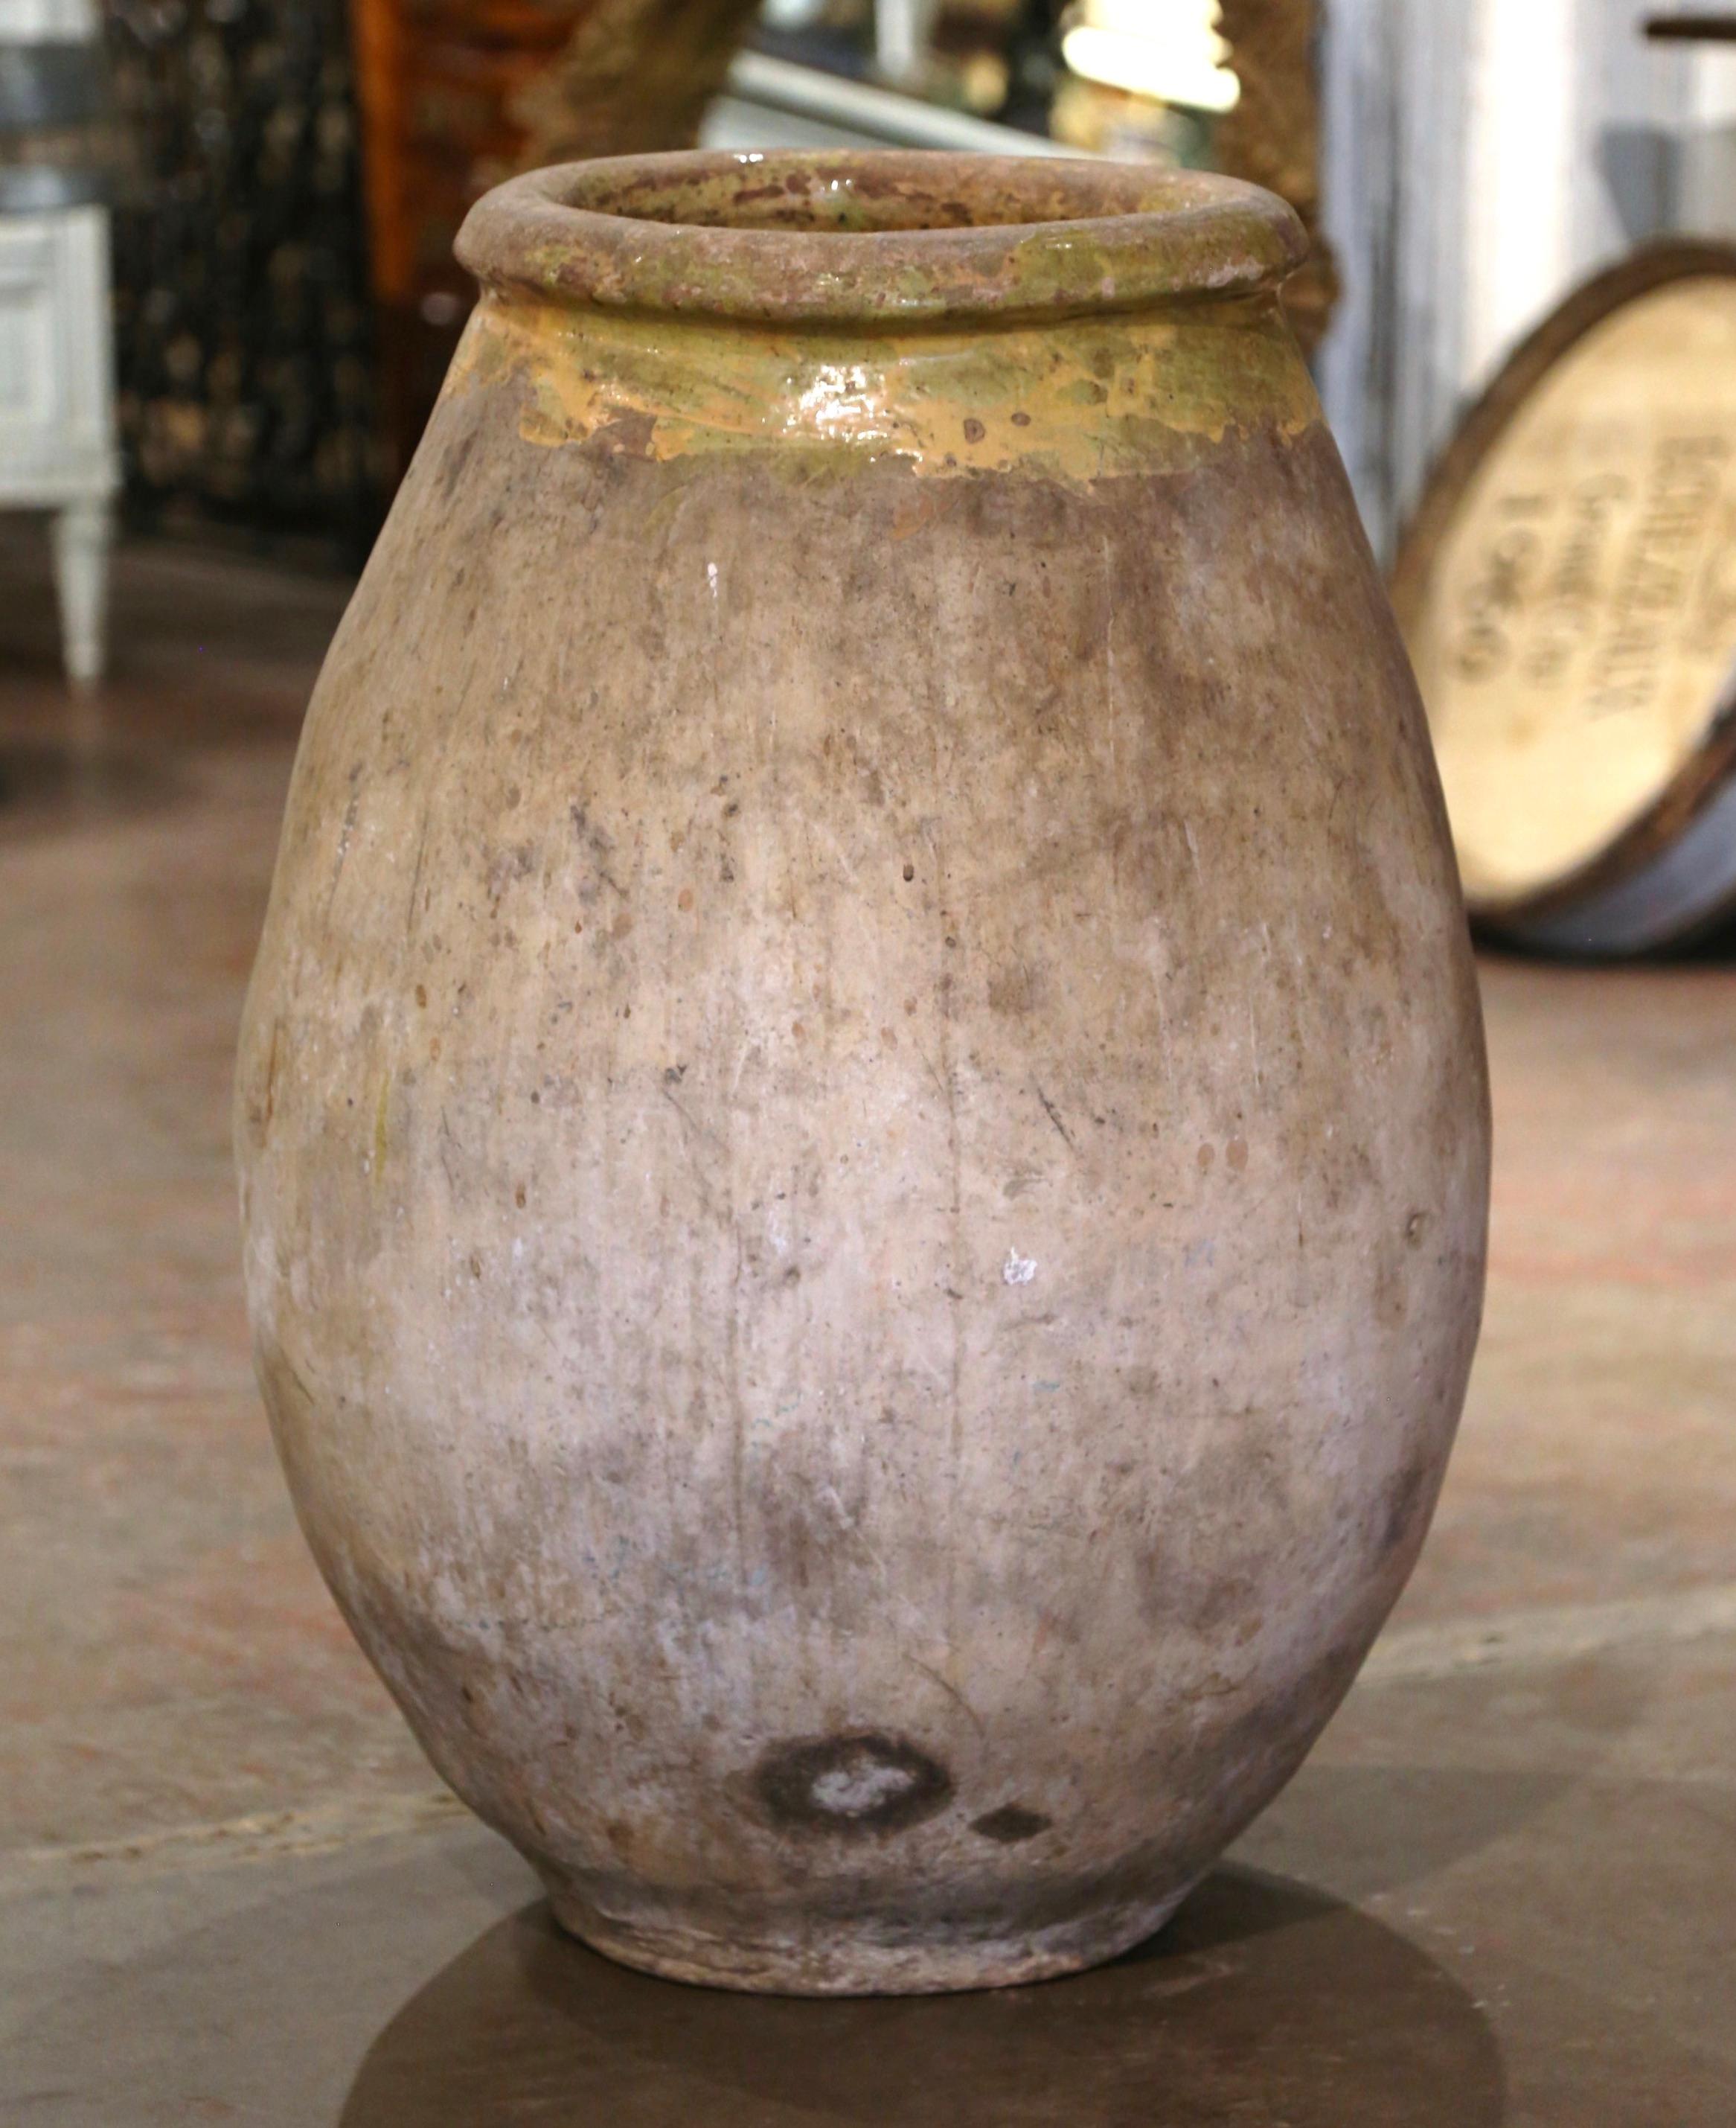 Cette grande jarre à huile d'olive en faïence a été créée à Biot, en Provence, dans le sud de la France, vers 1760. Fabriqué en argile blonde et de couleur neutre, le vase en terre cuite a une forme ronde et bulbeuse traditionnelle. Ce pot rustique